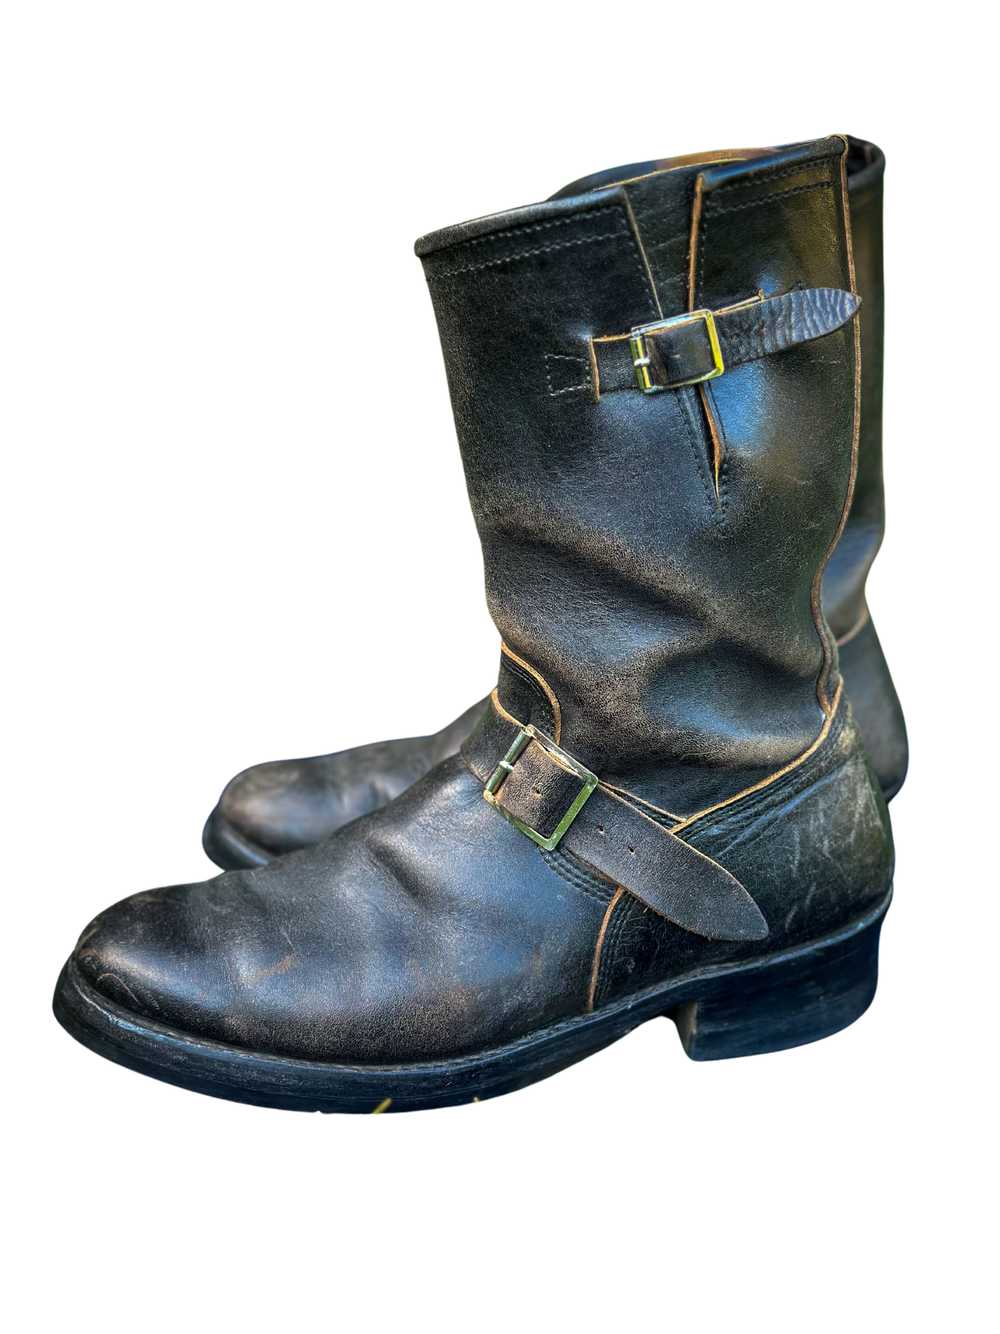 Standard & Strange JL Wabash Engineer boots- Limi… - image 1